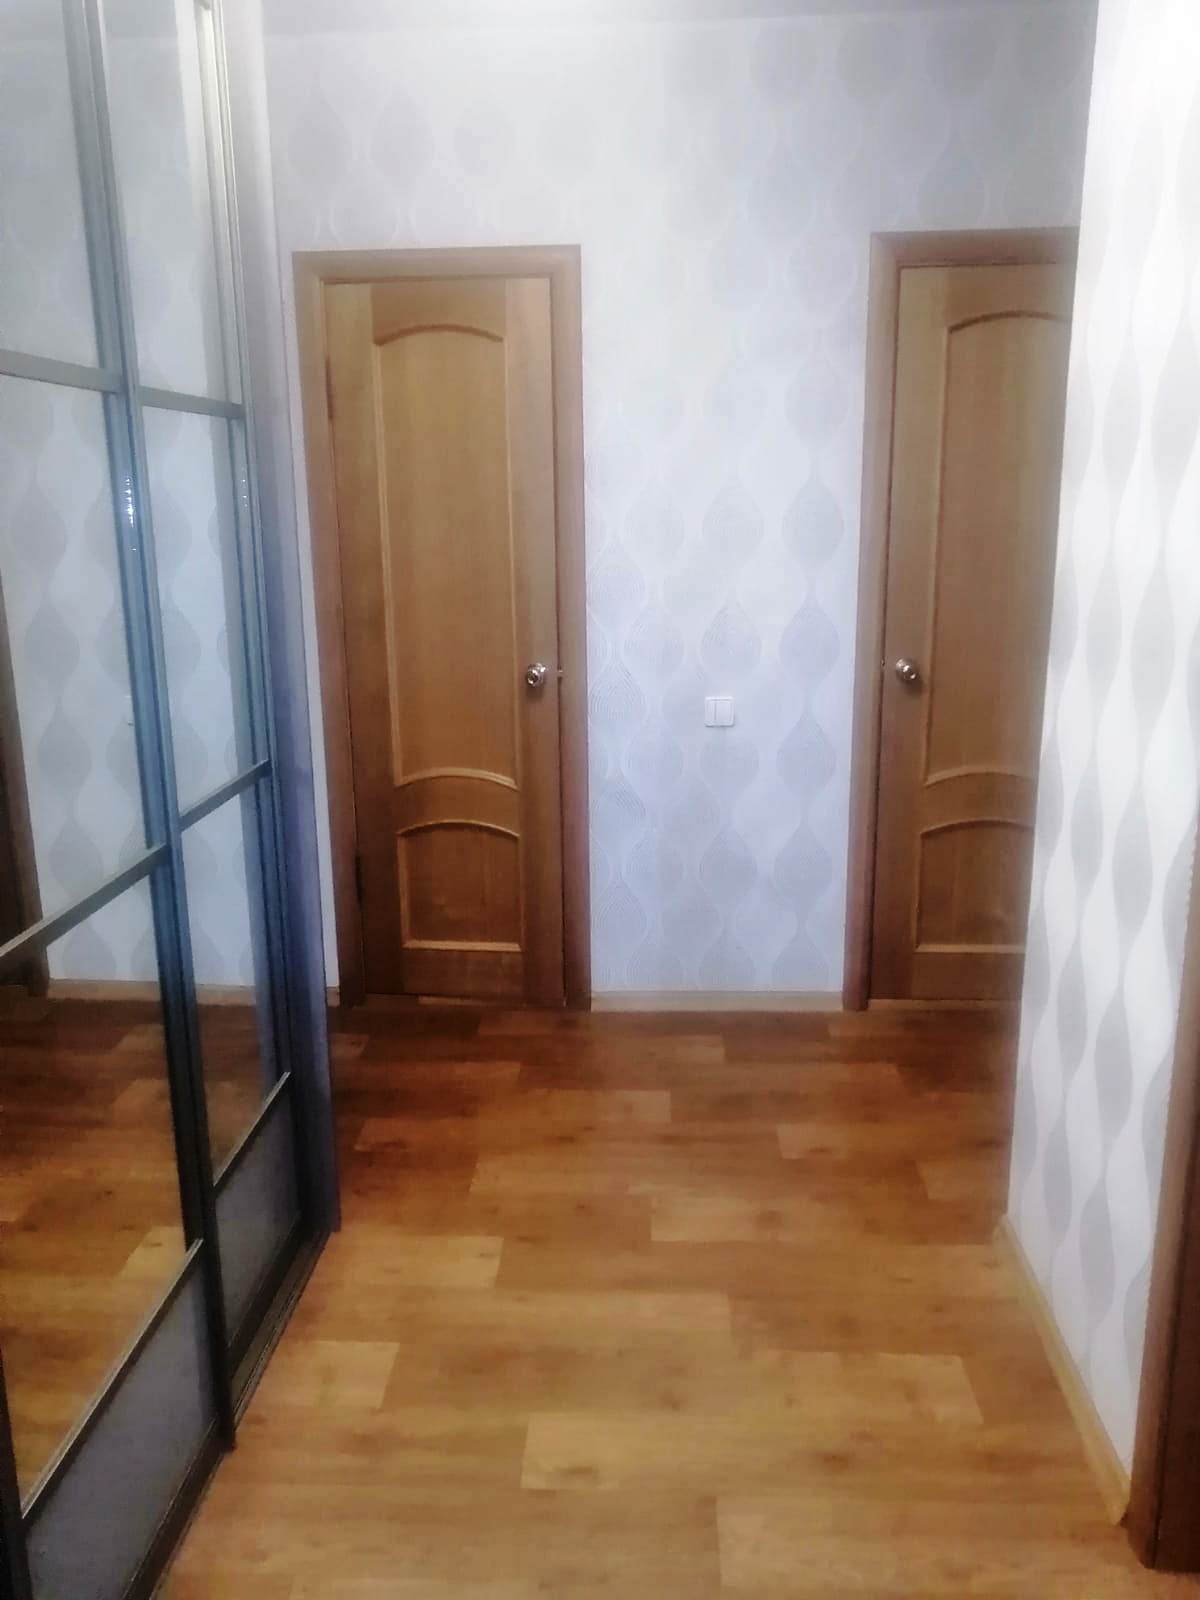 Продается отличная 3-х комнатная квартира улучшенной планировки на среднем этаже кирпичного дома в г. Зеленодольск.... - 8